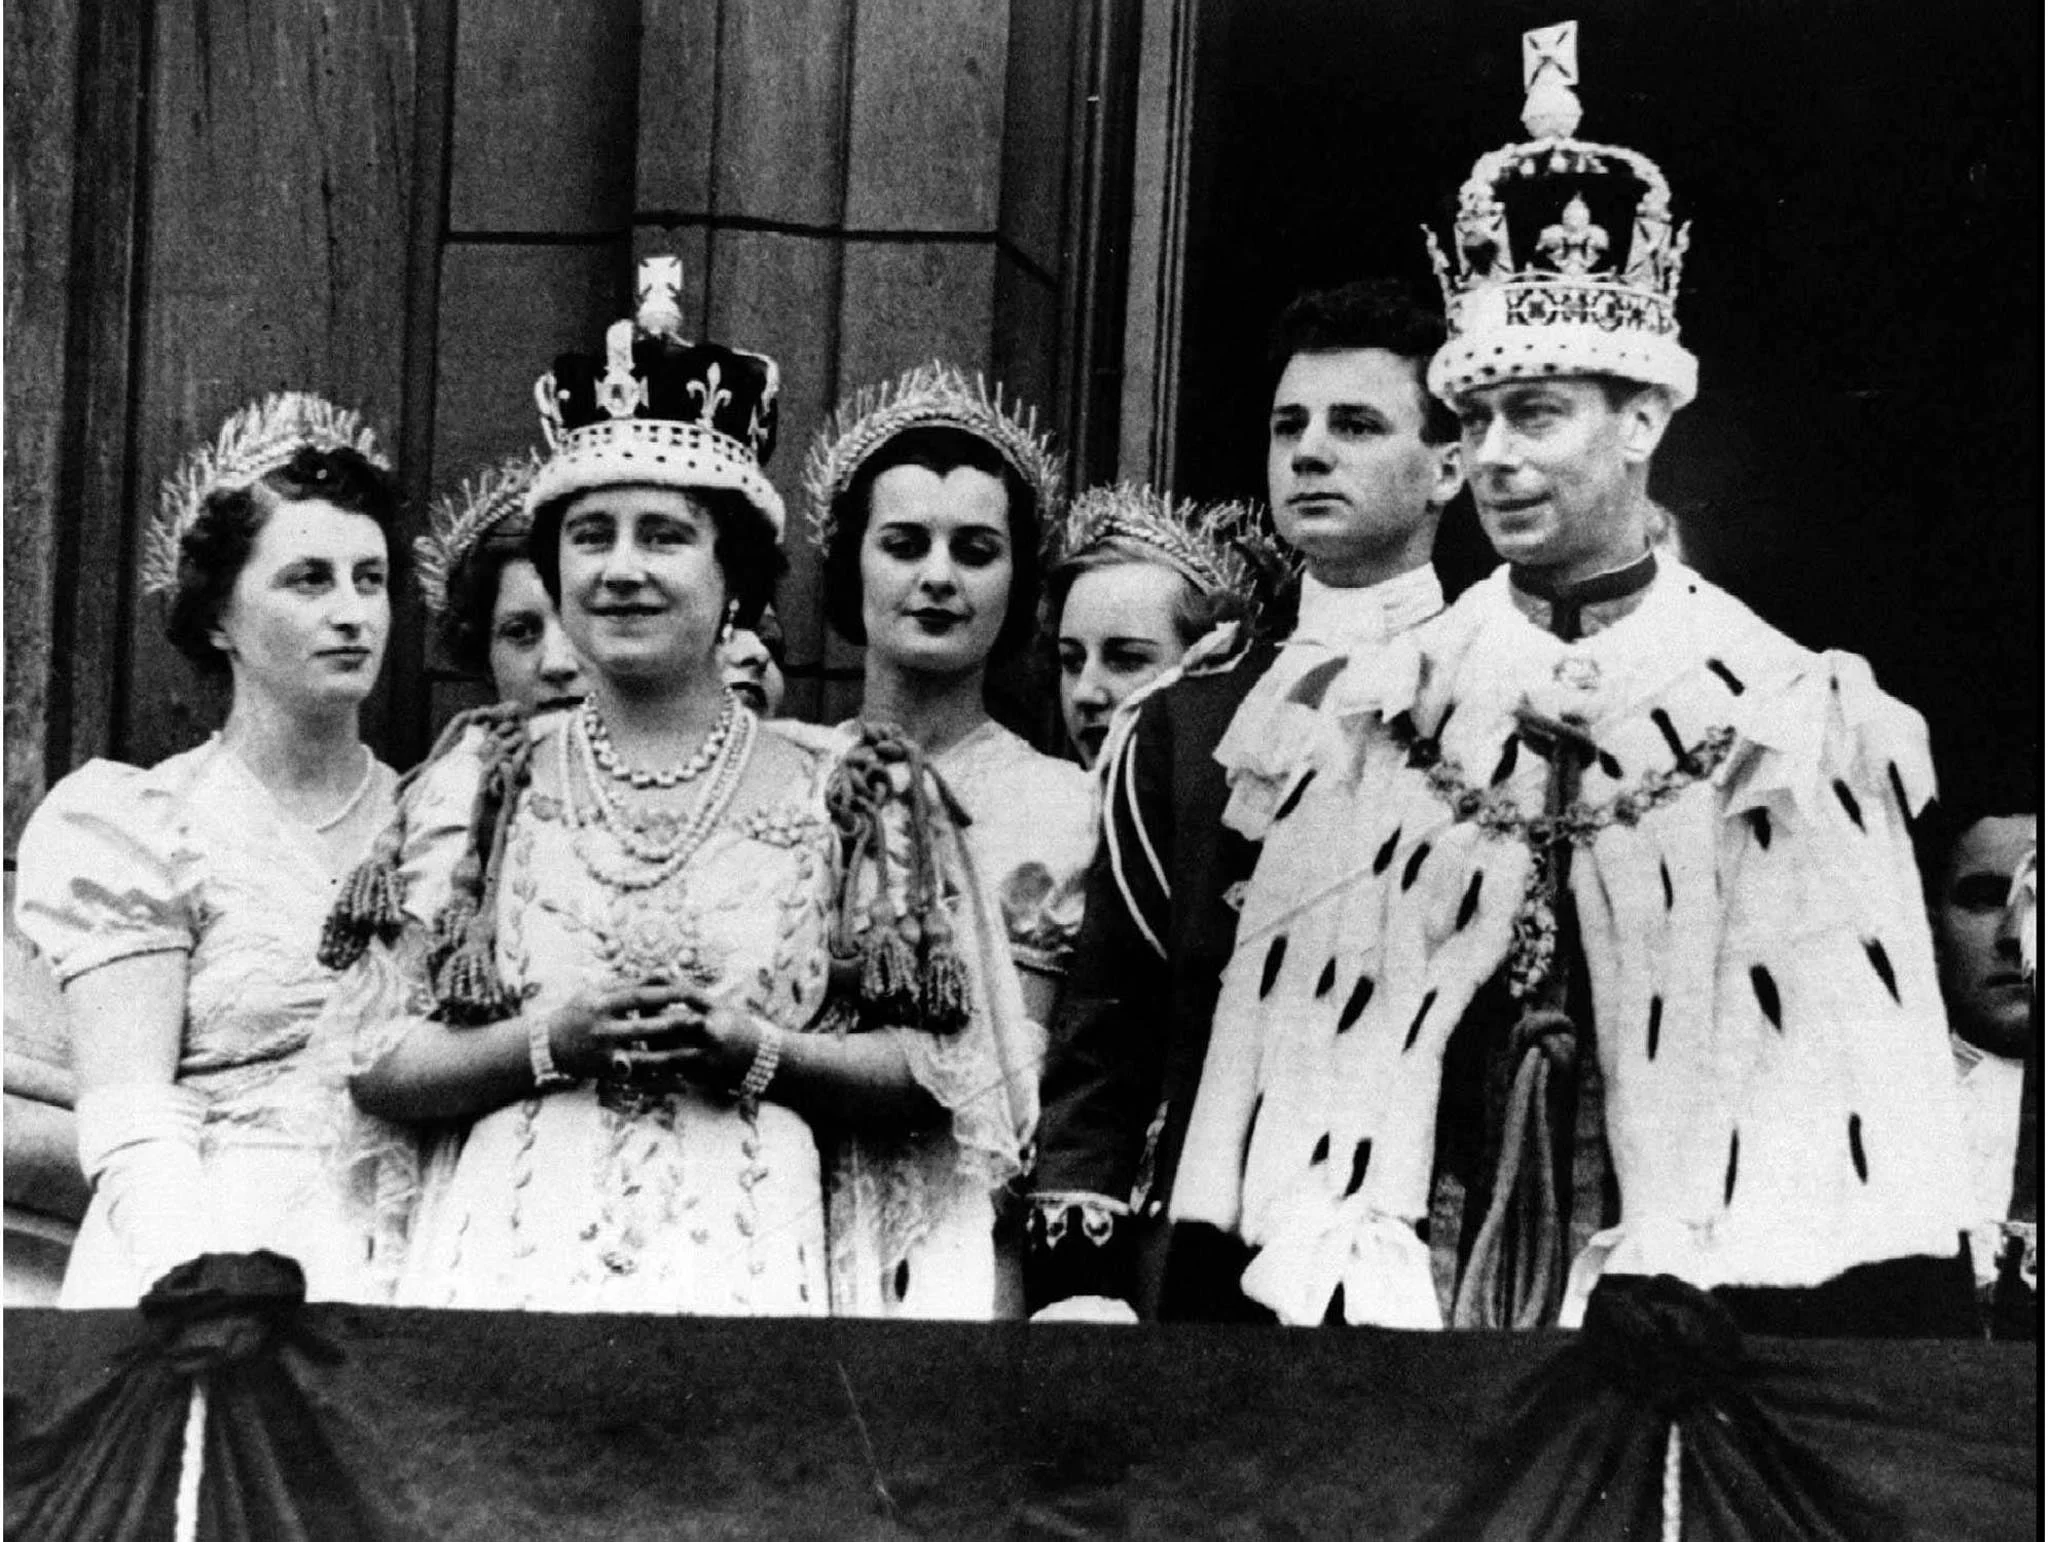 הוריה של המלכה אליזבת השנייה, ג'ורג' השישי ואליזבת הראשונה